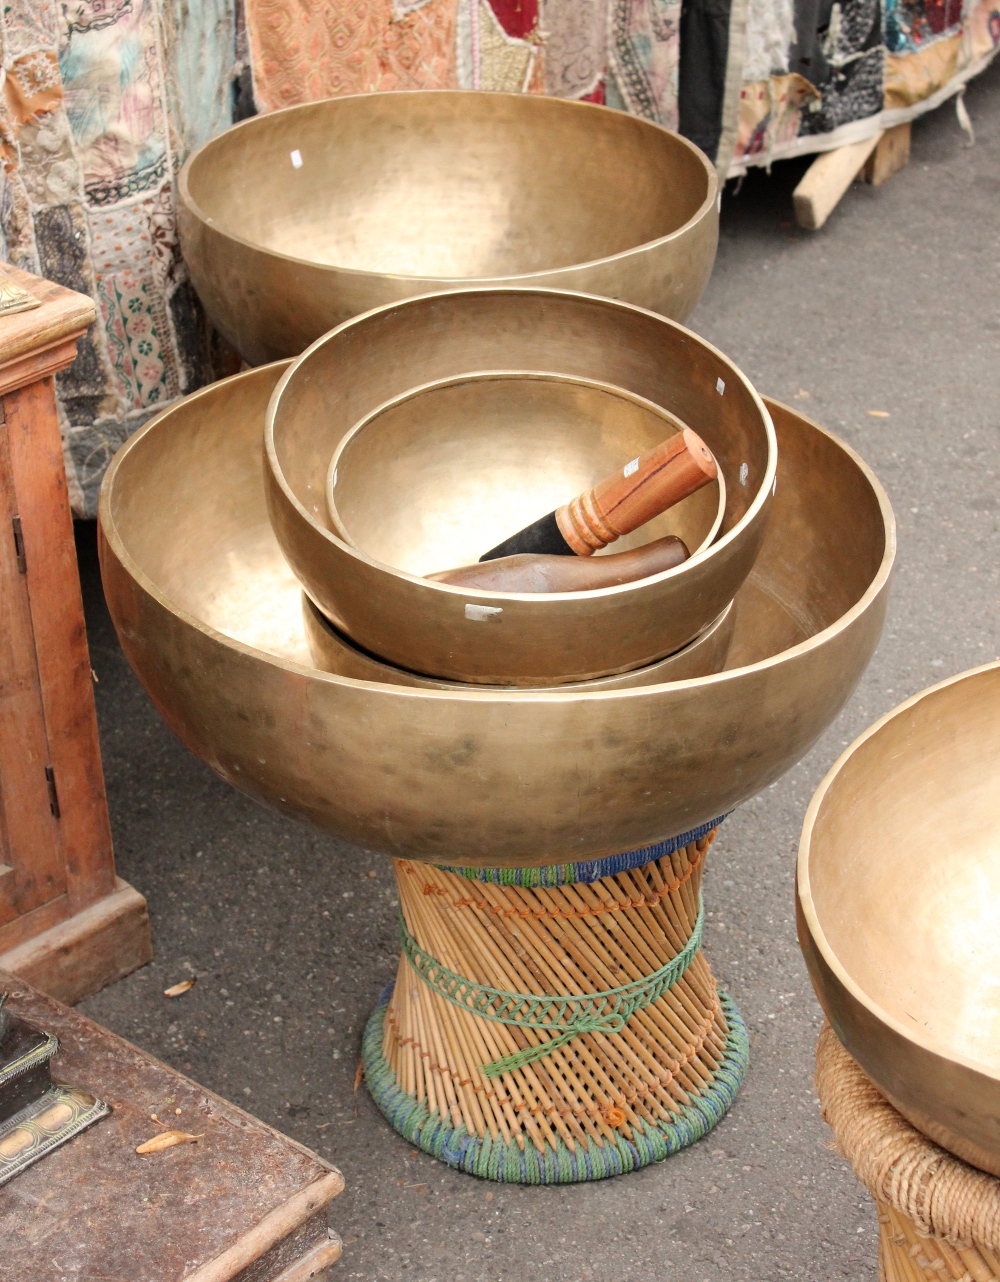 Huge tibetan singing bowl on display at a market